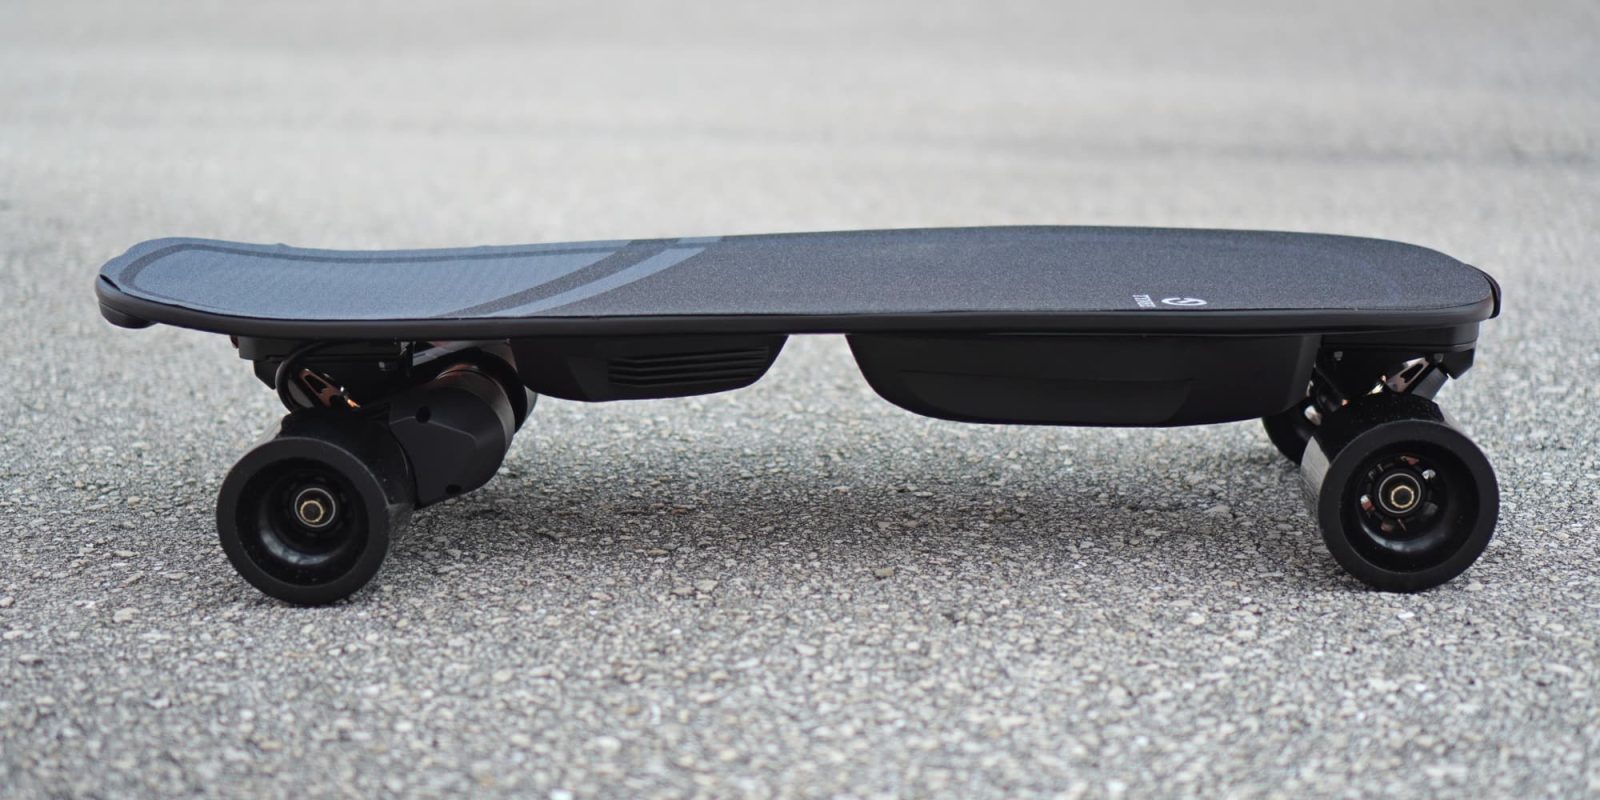 tynee mini 2 electric skateboard